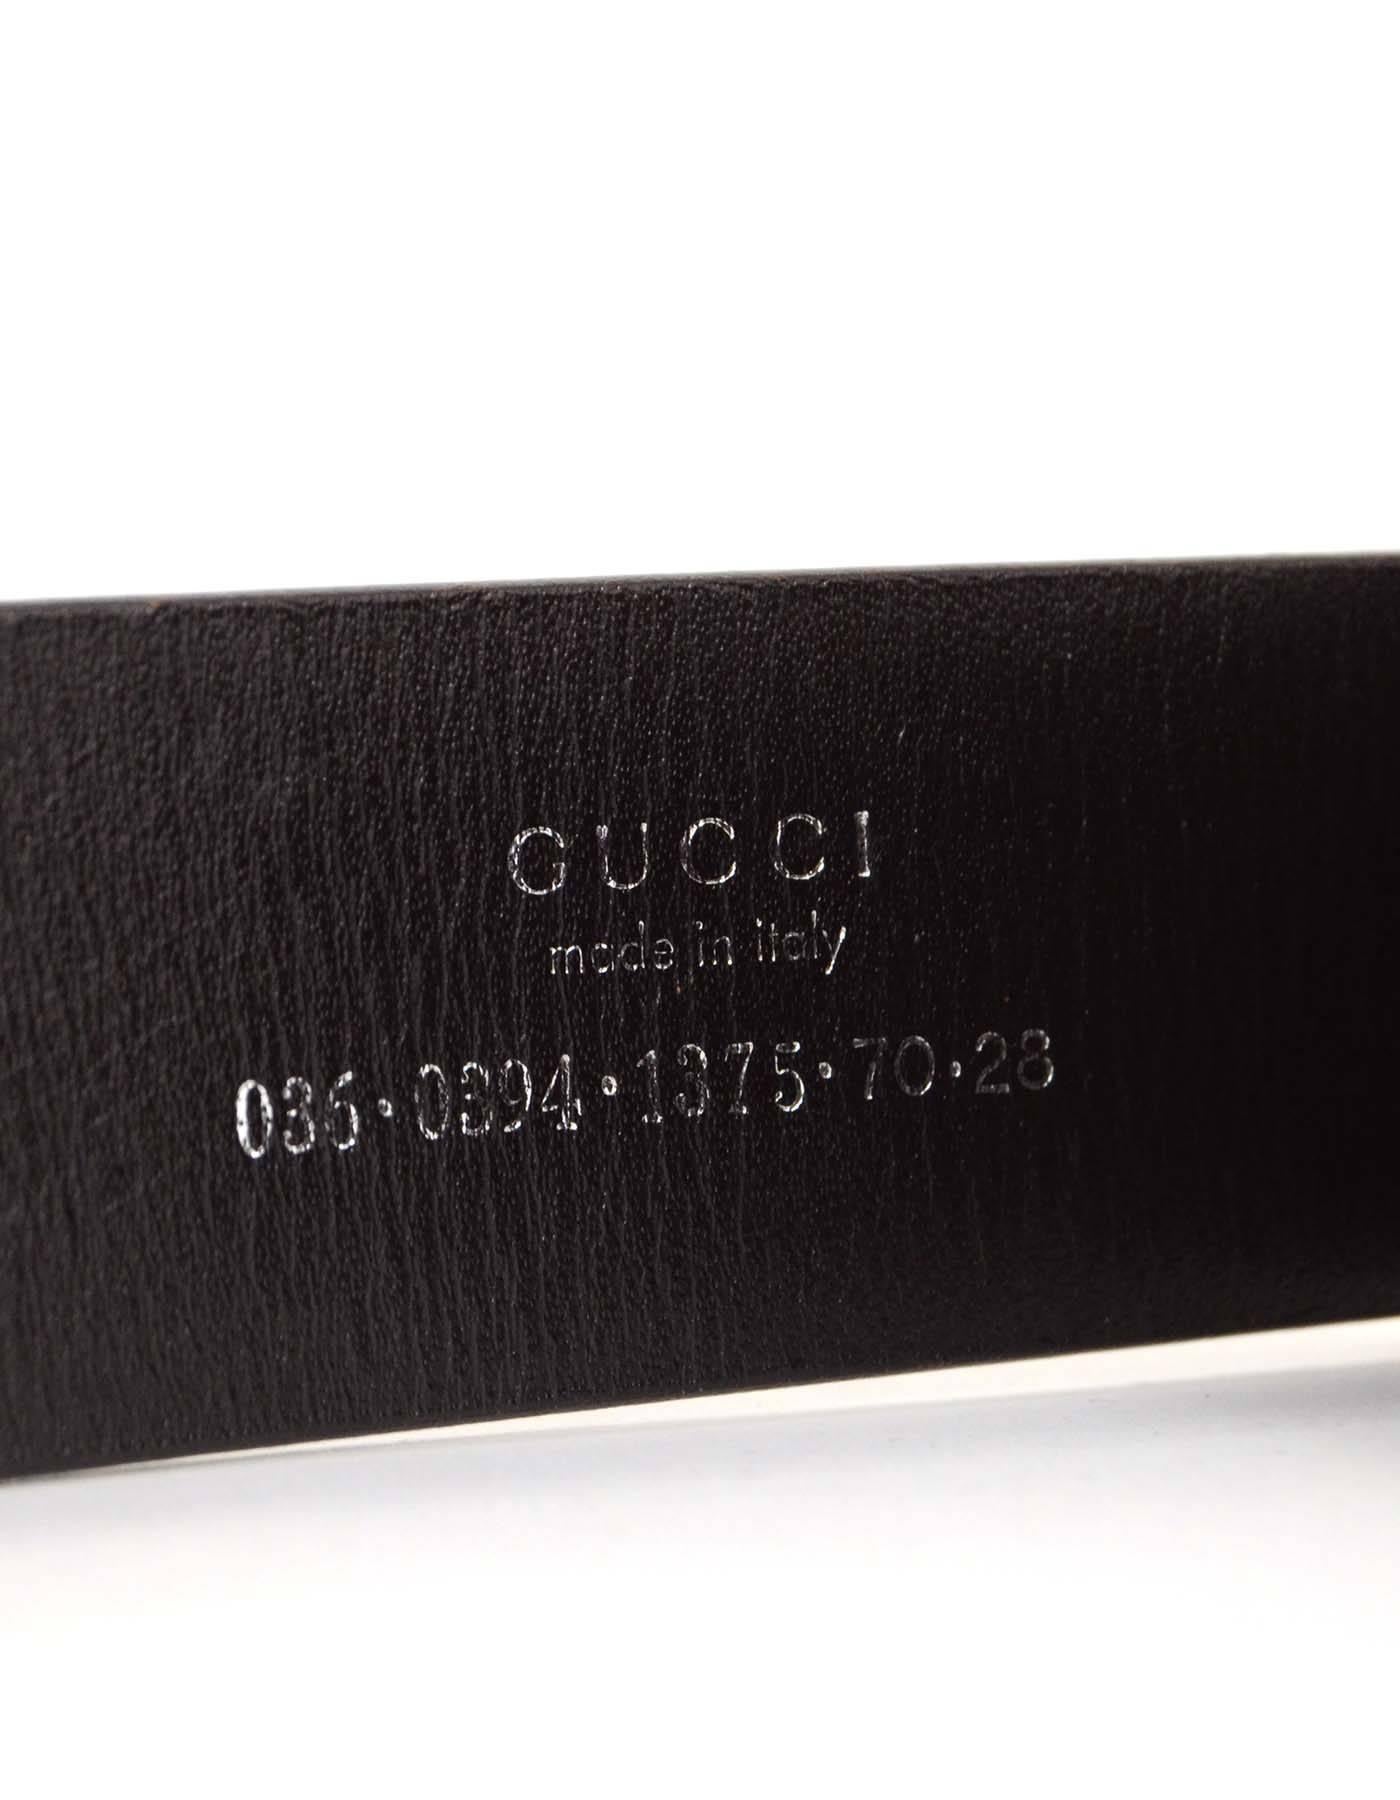 Women's Gucci Black Leather Logo Belt sz 36 SHW 